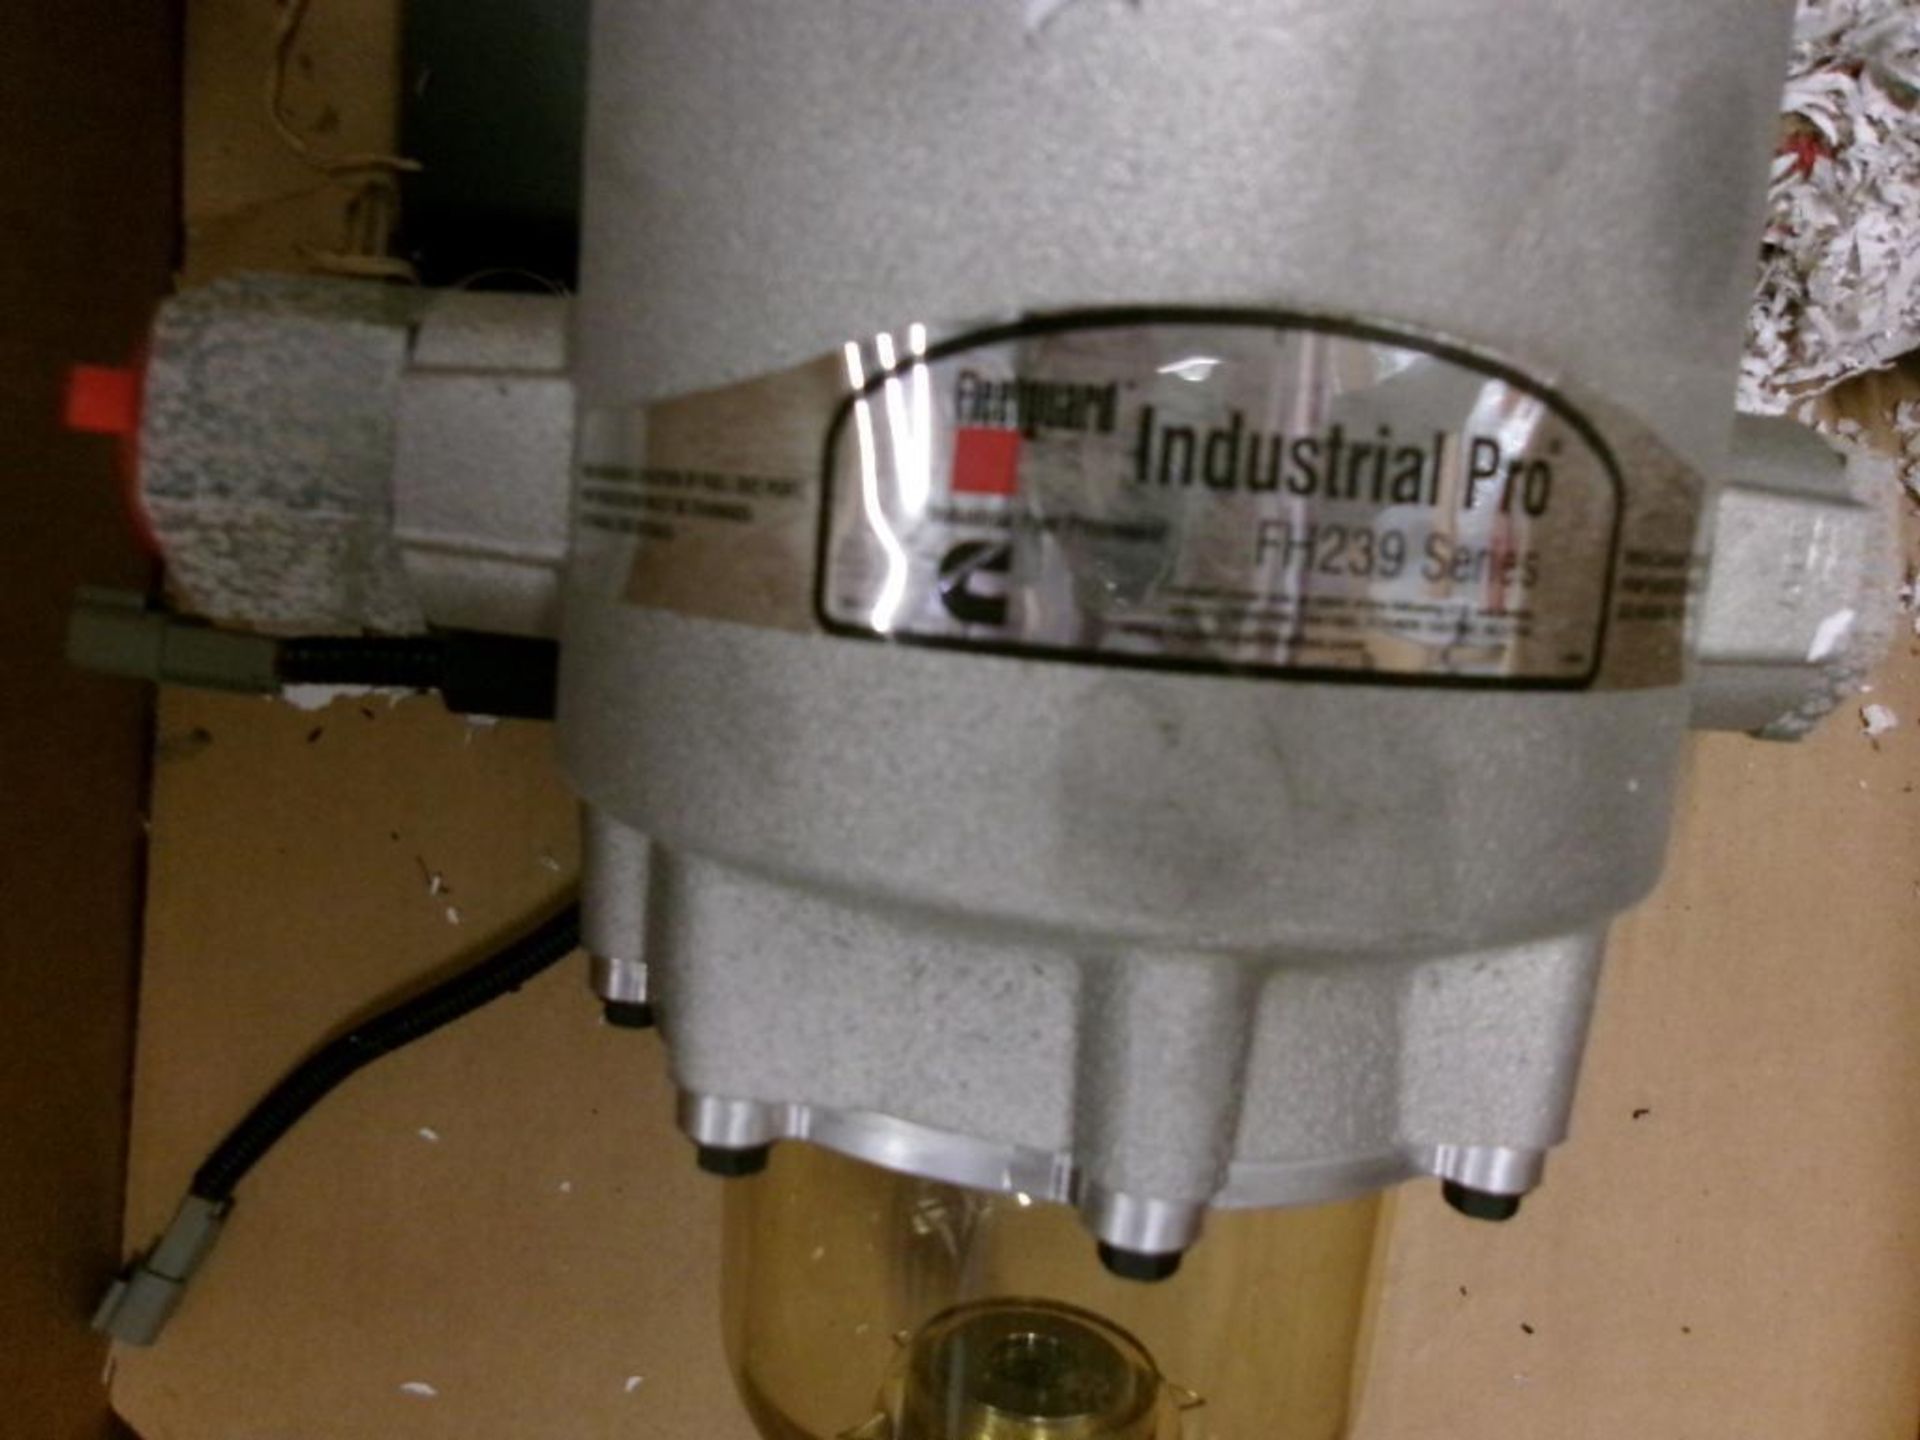 Fleetguard FS53014 Fuel Water Separator, Model FS53014 (New) - Image 7 of 10